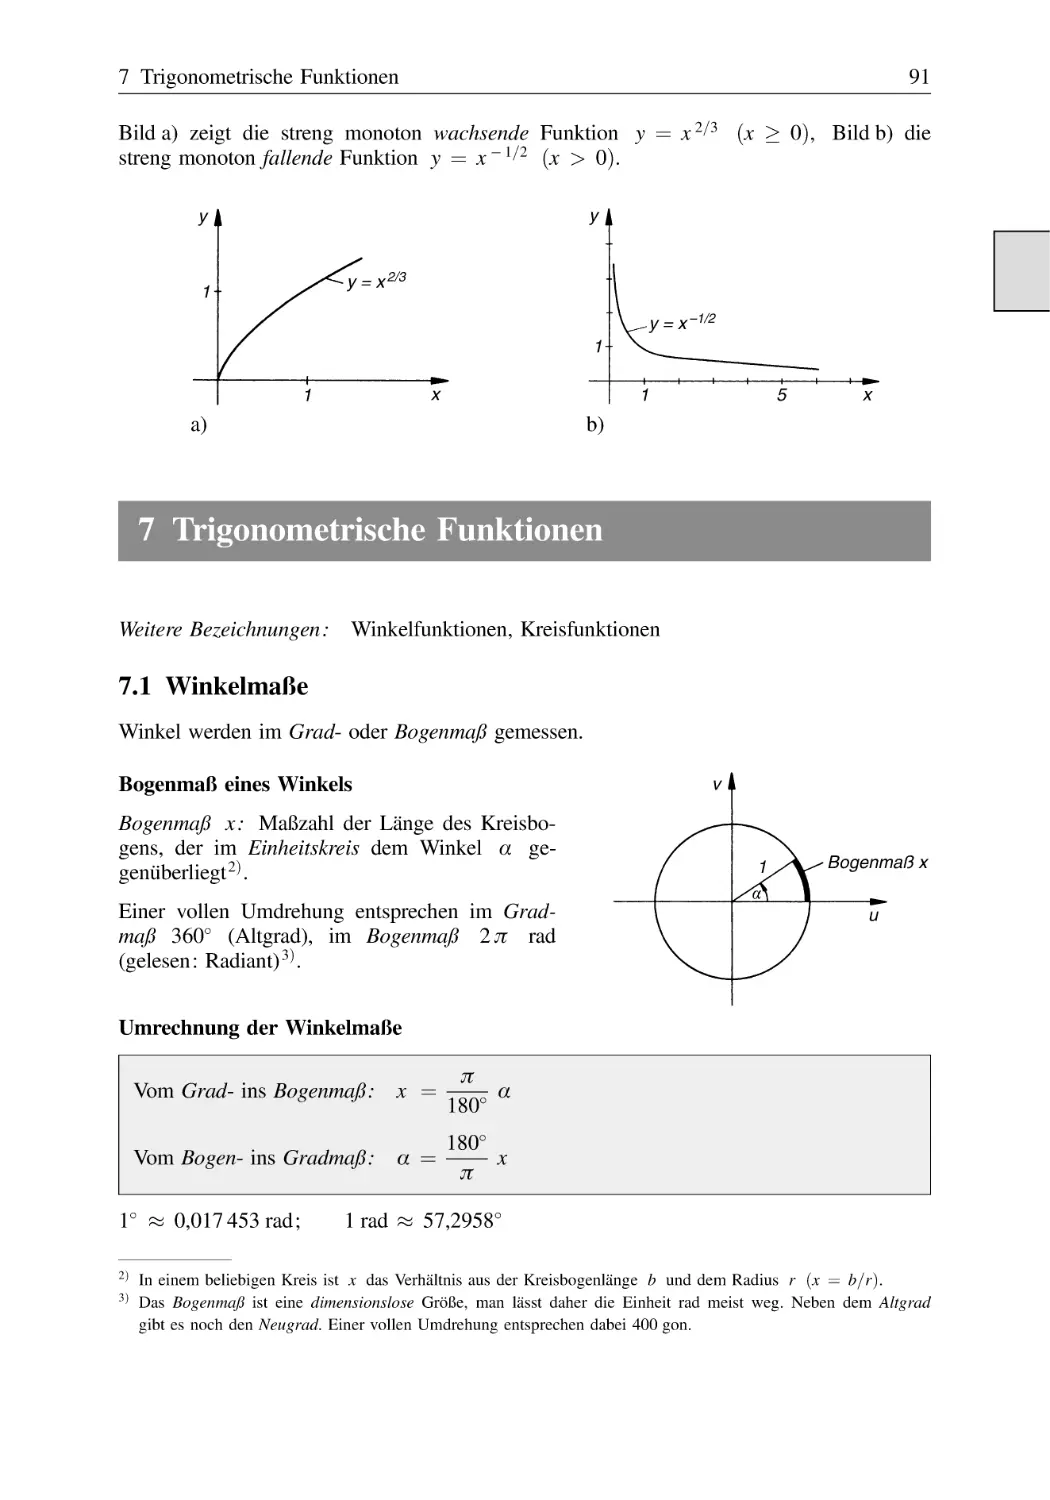 7 Trigonometrische Funktionen
7.1 Winkelmaße